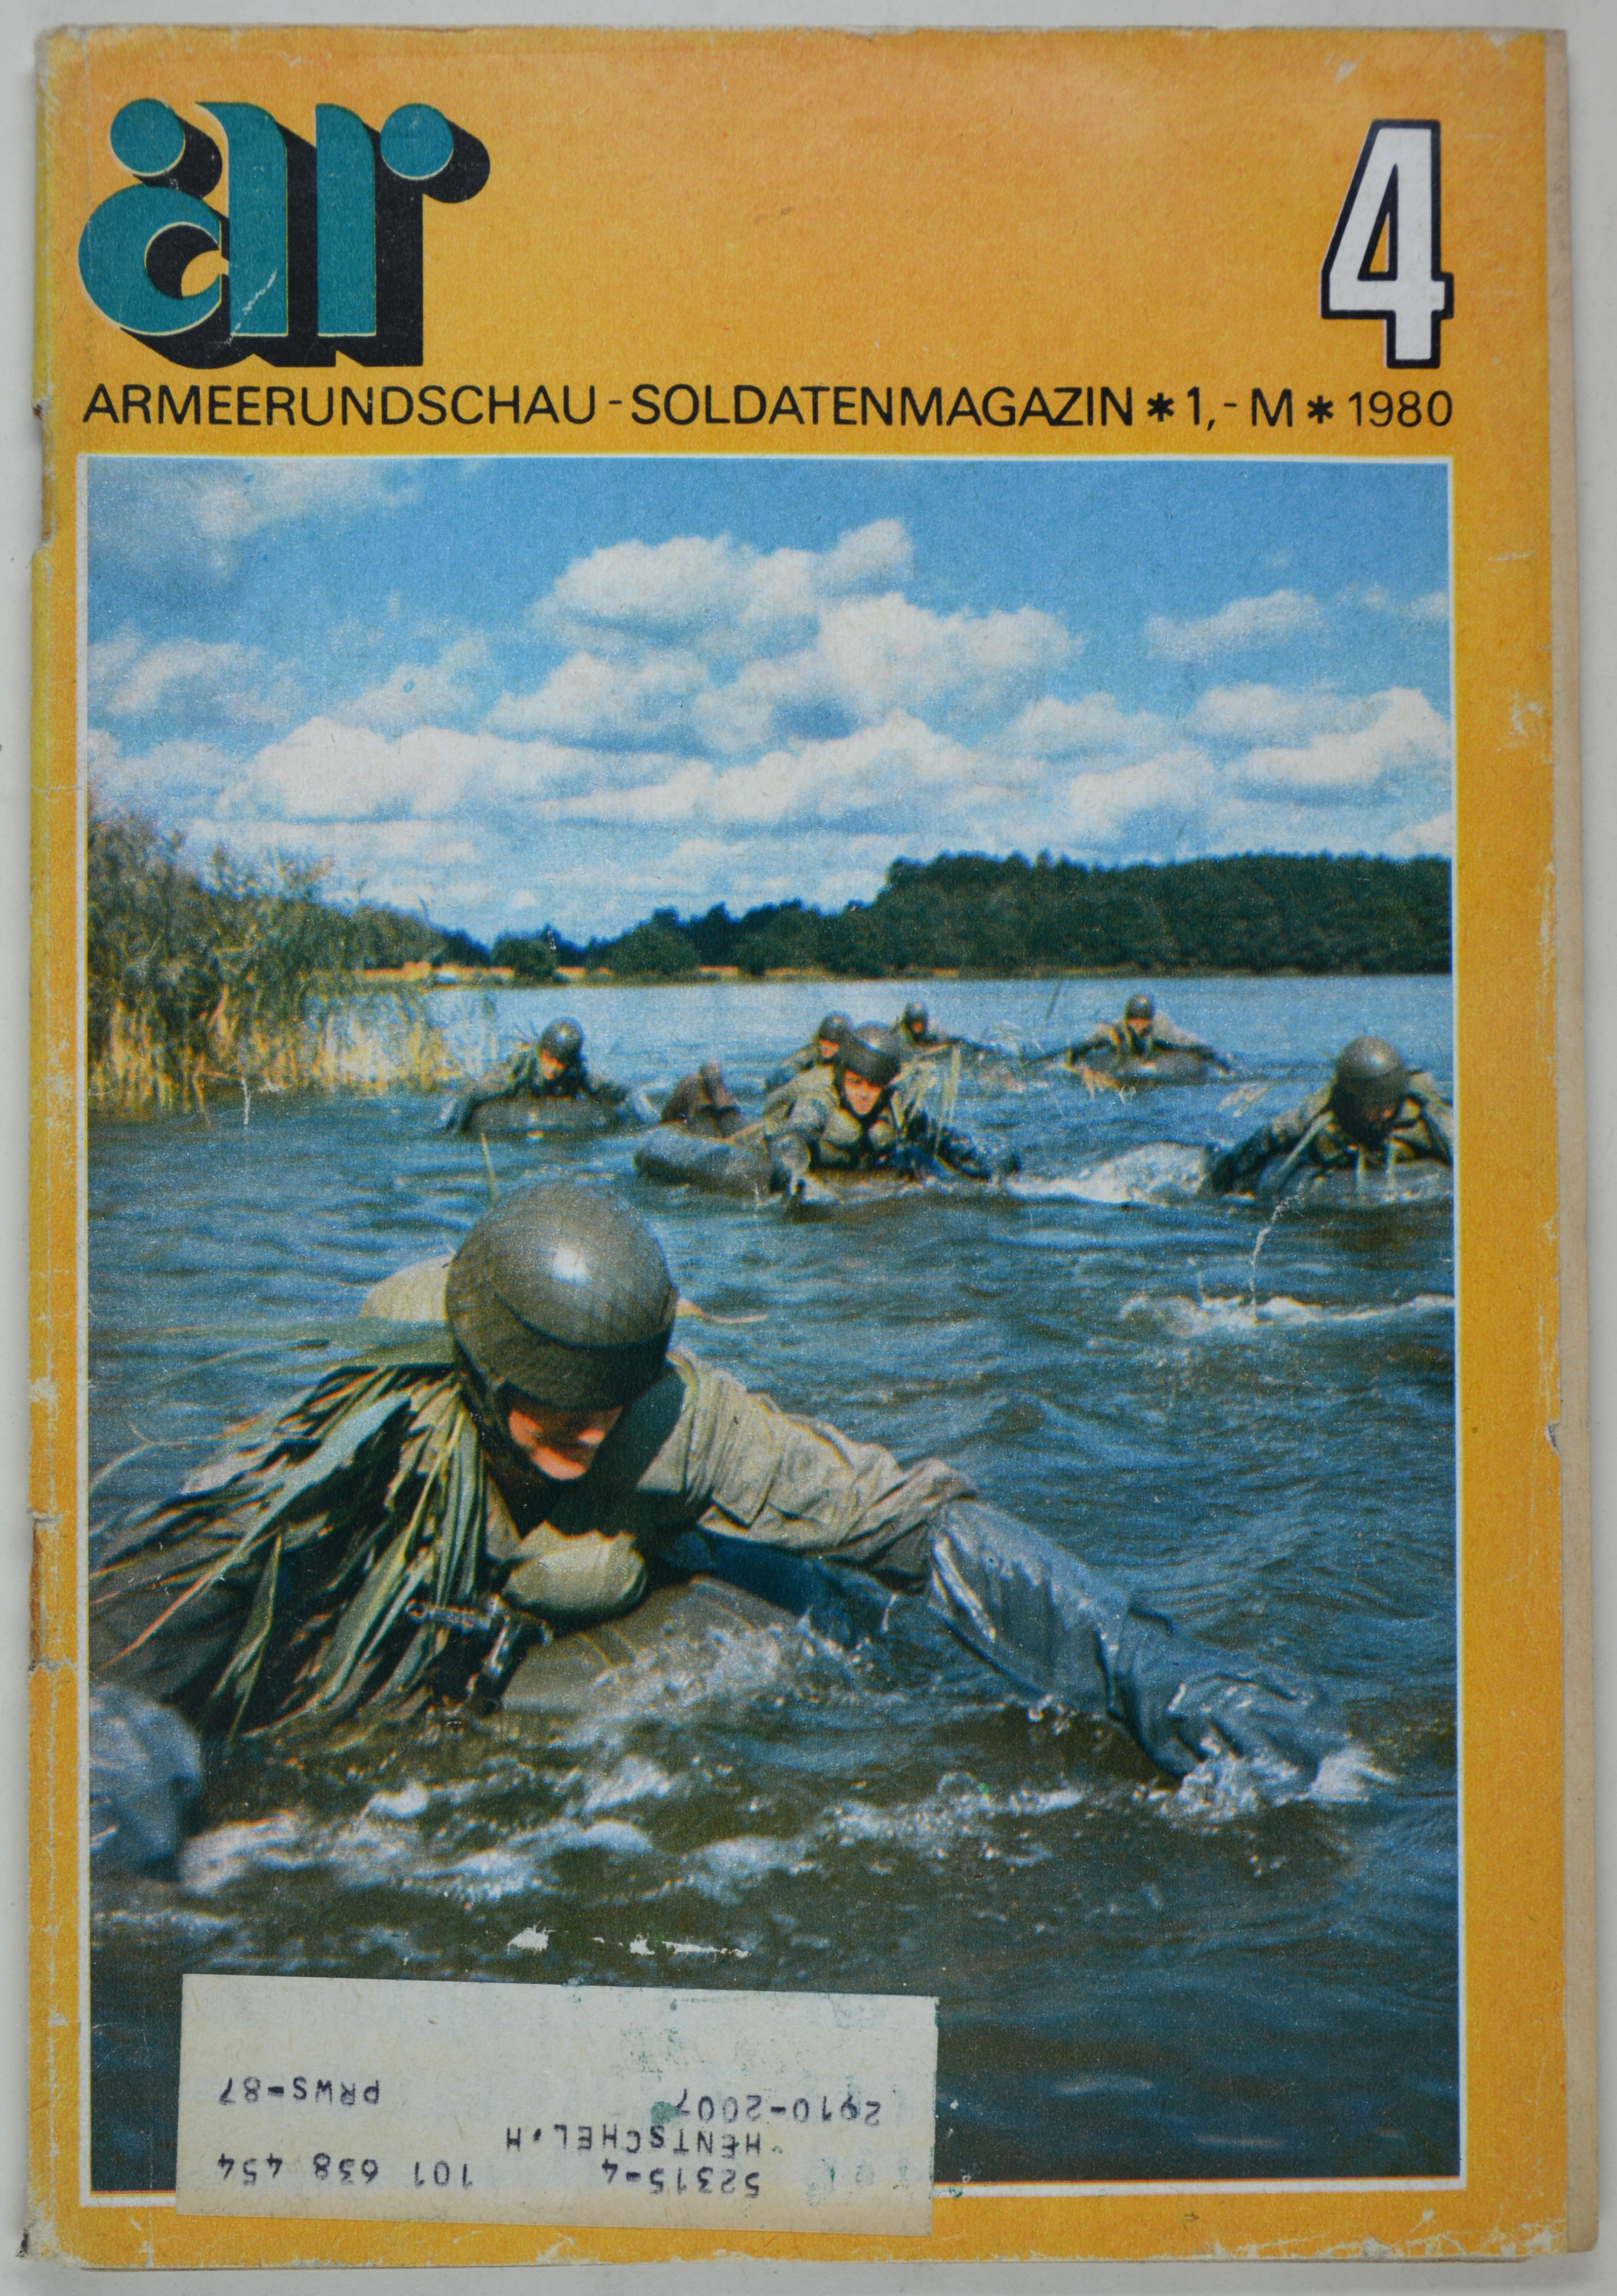 Armeerundschau - Soldatenmagazin (1980), Heft 4 (DDR Geschichtsmuseum im Dokumentationszentrum Perleberg CC BY-SA)